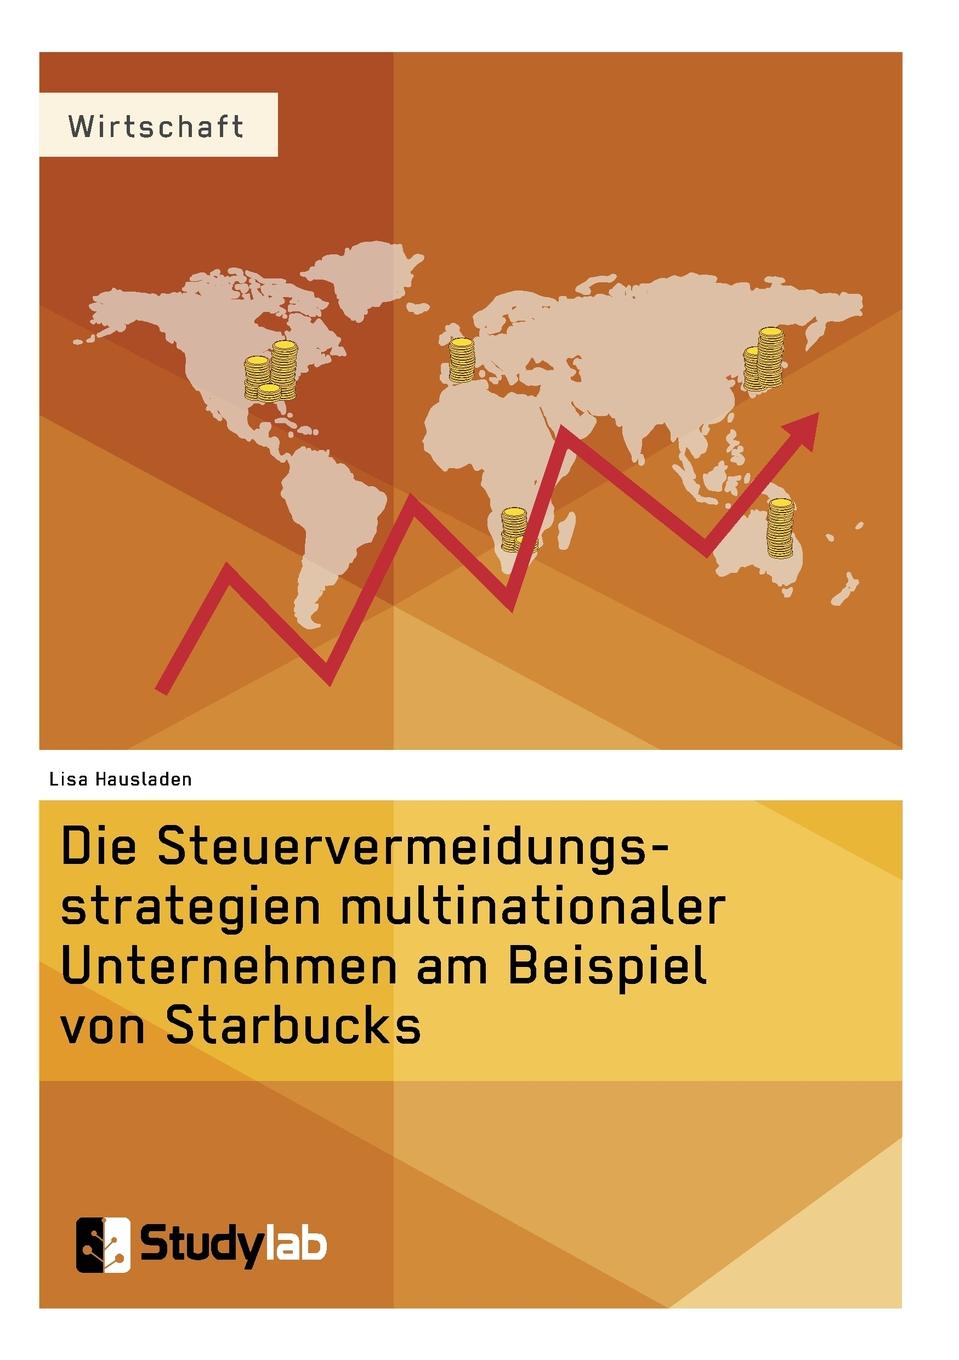 Die Steuervermeidungsstrategien multinationaler Unternehmen am Beispiel von Starbucks